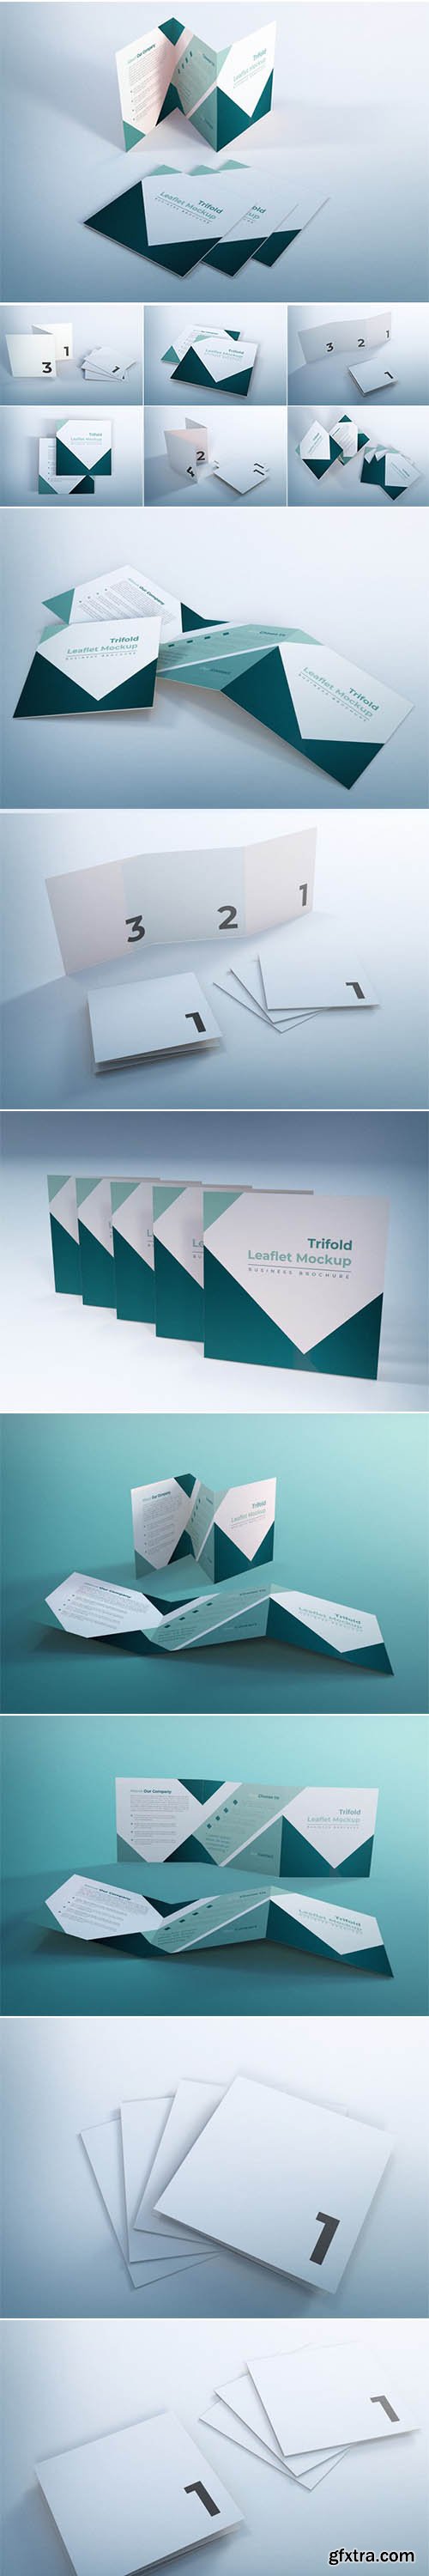 Trifold leaflet mockup business brochure design template